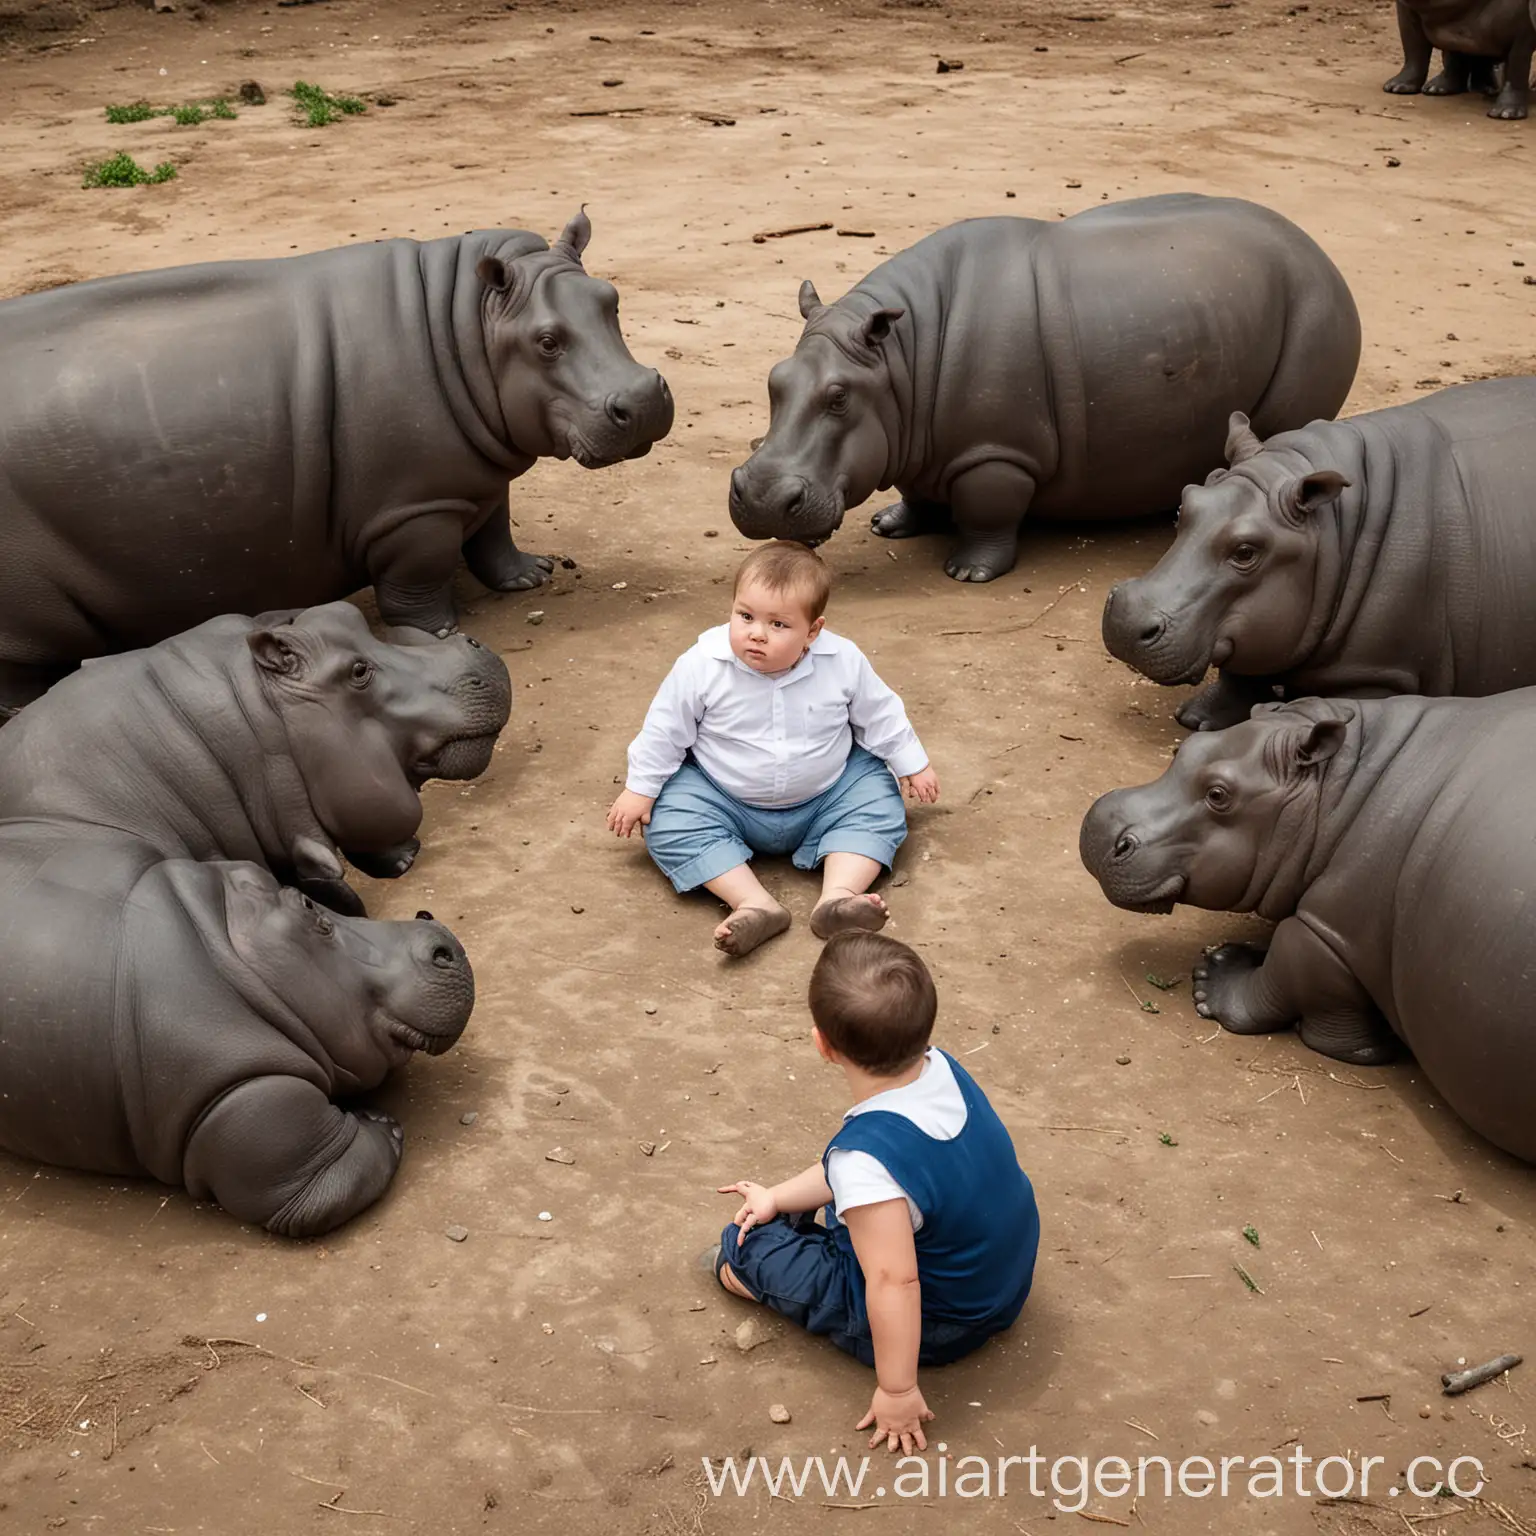 маленький, толстый мальчик сидит на земле в большом кругу, больших бегемотов, которые смотрят на него